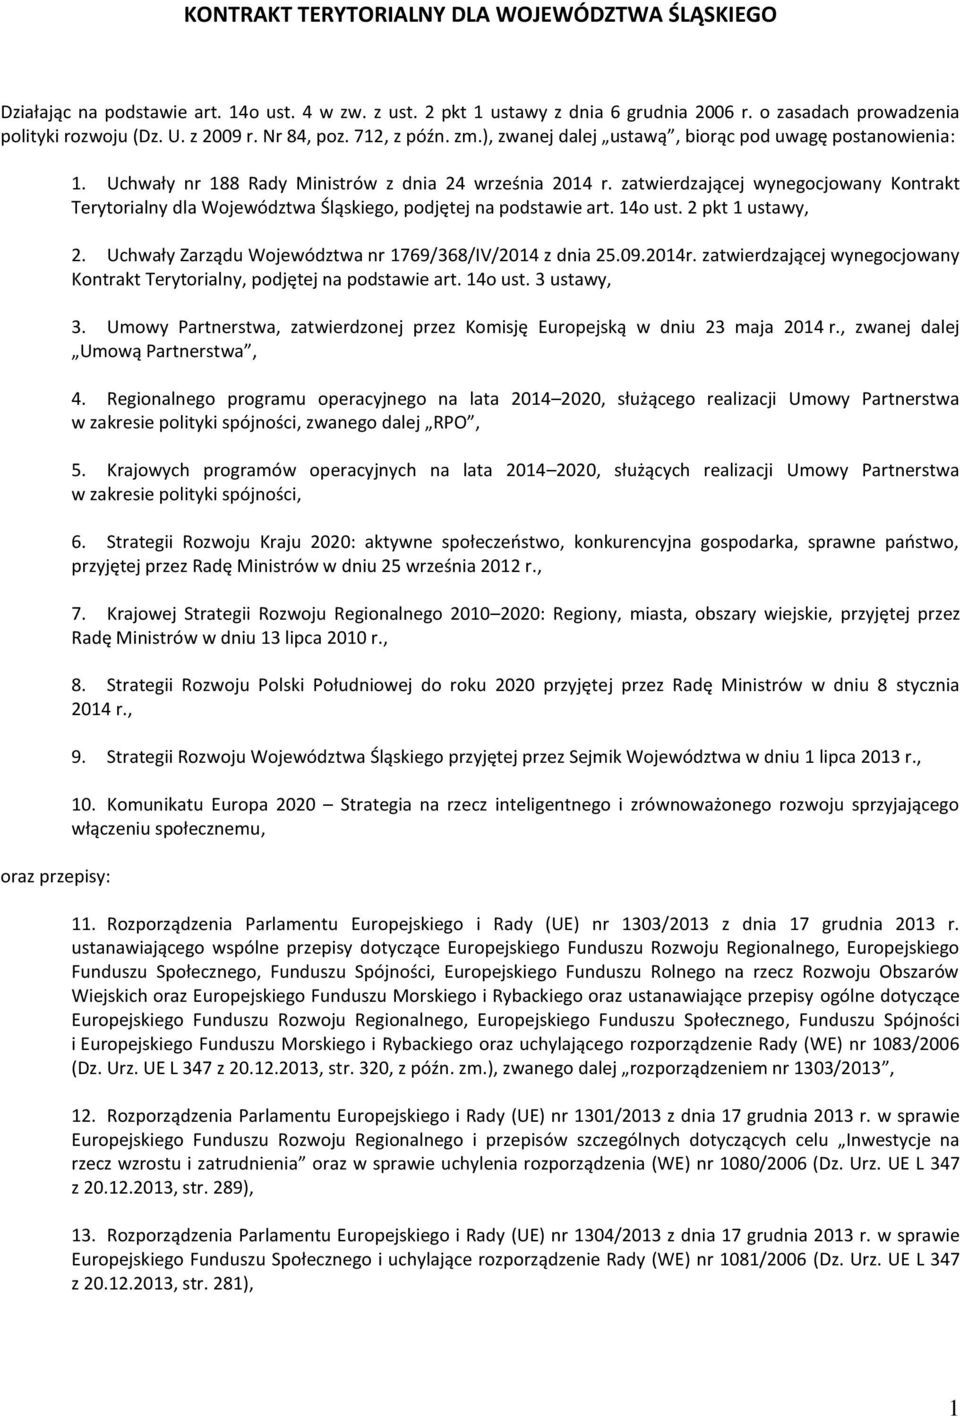 zatwierdzającej wynegocjowany Kontrakt Terytorialny dla Województwa Śląskiego, podjętej na podstawie art. 14o ust. 2 pkt 1 ustawy, 2. Uchwały Zarządu Województwa nr 1769/368/IV/2014 z dnia 25.09.